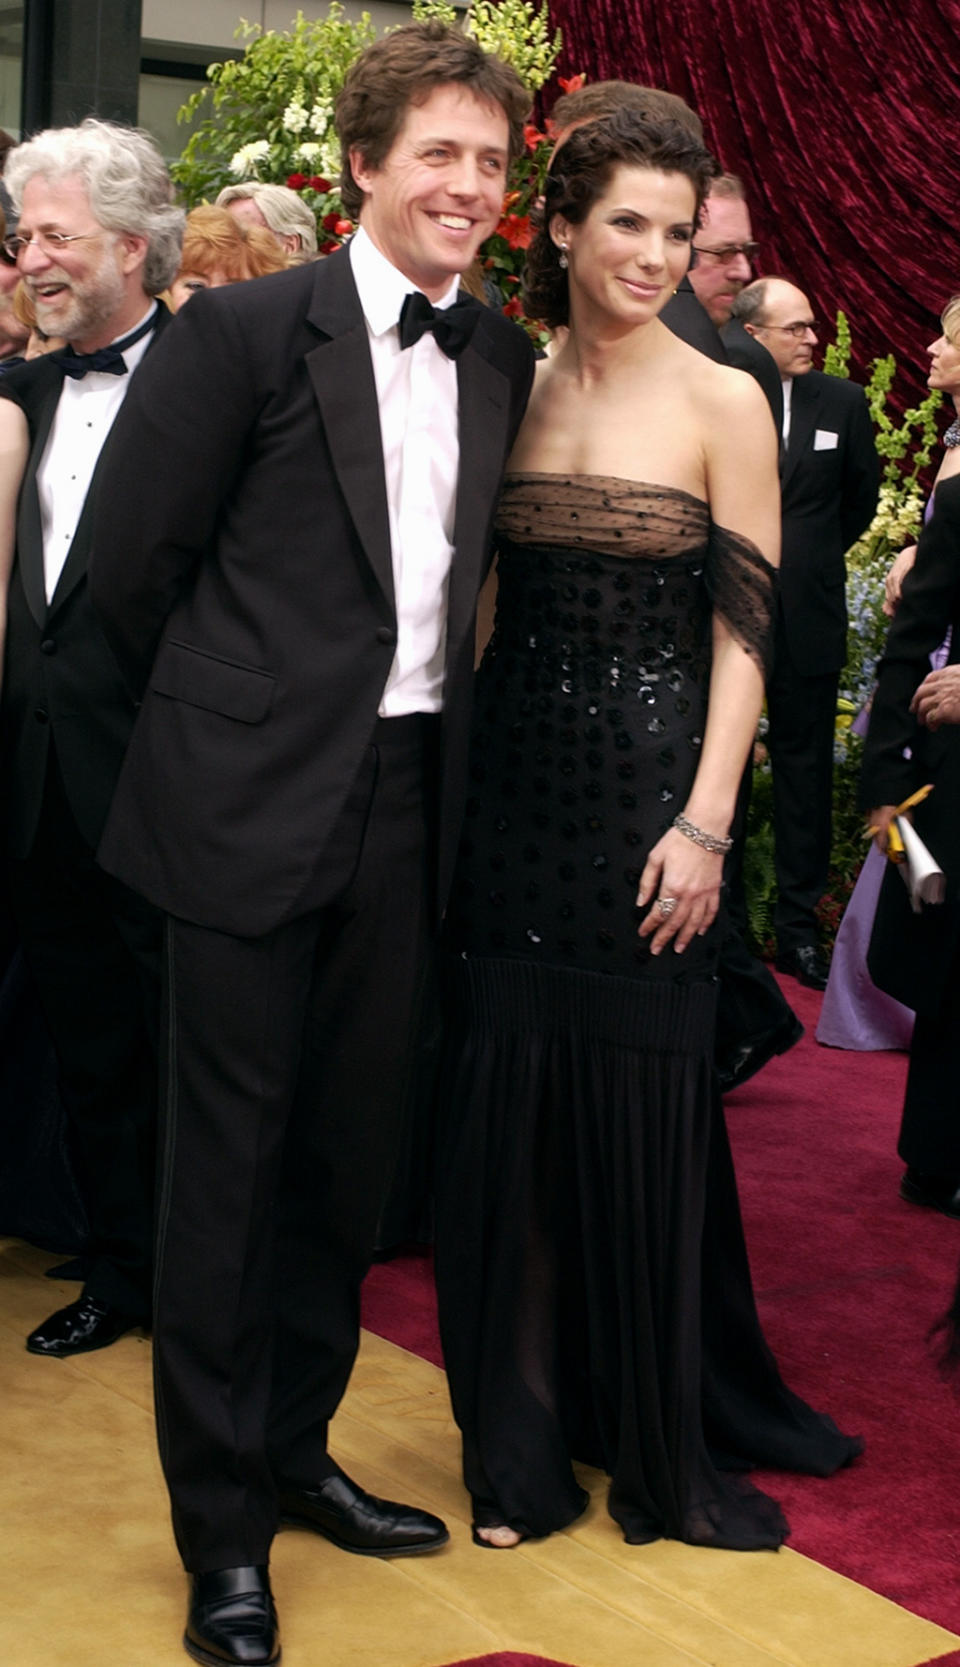 Hugh Grant and Sandra Bullock